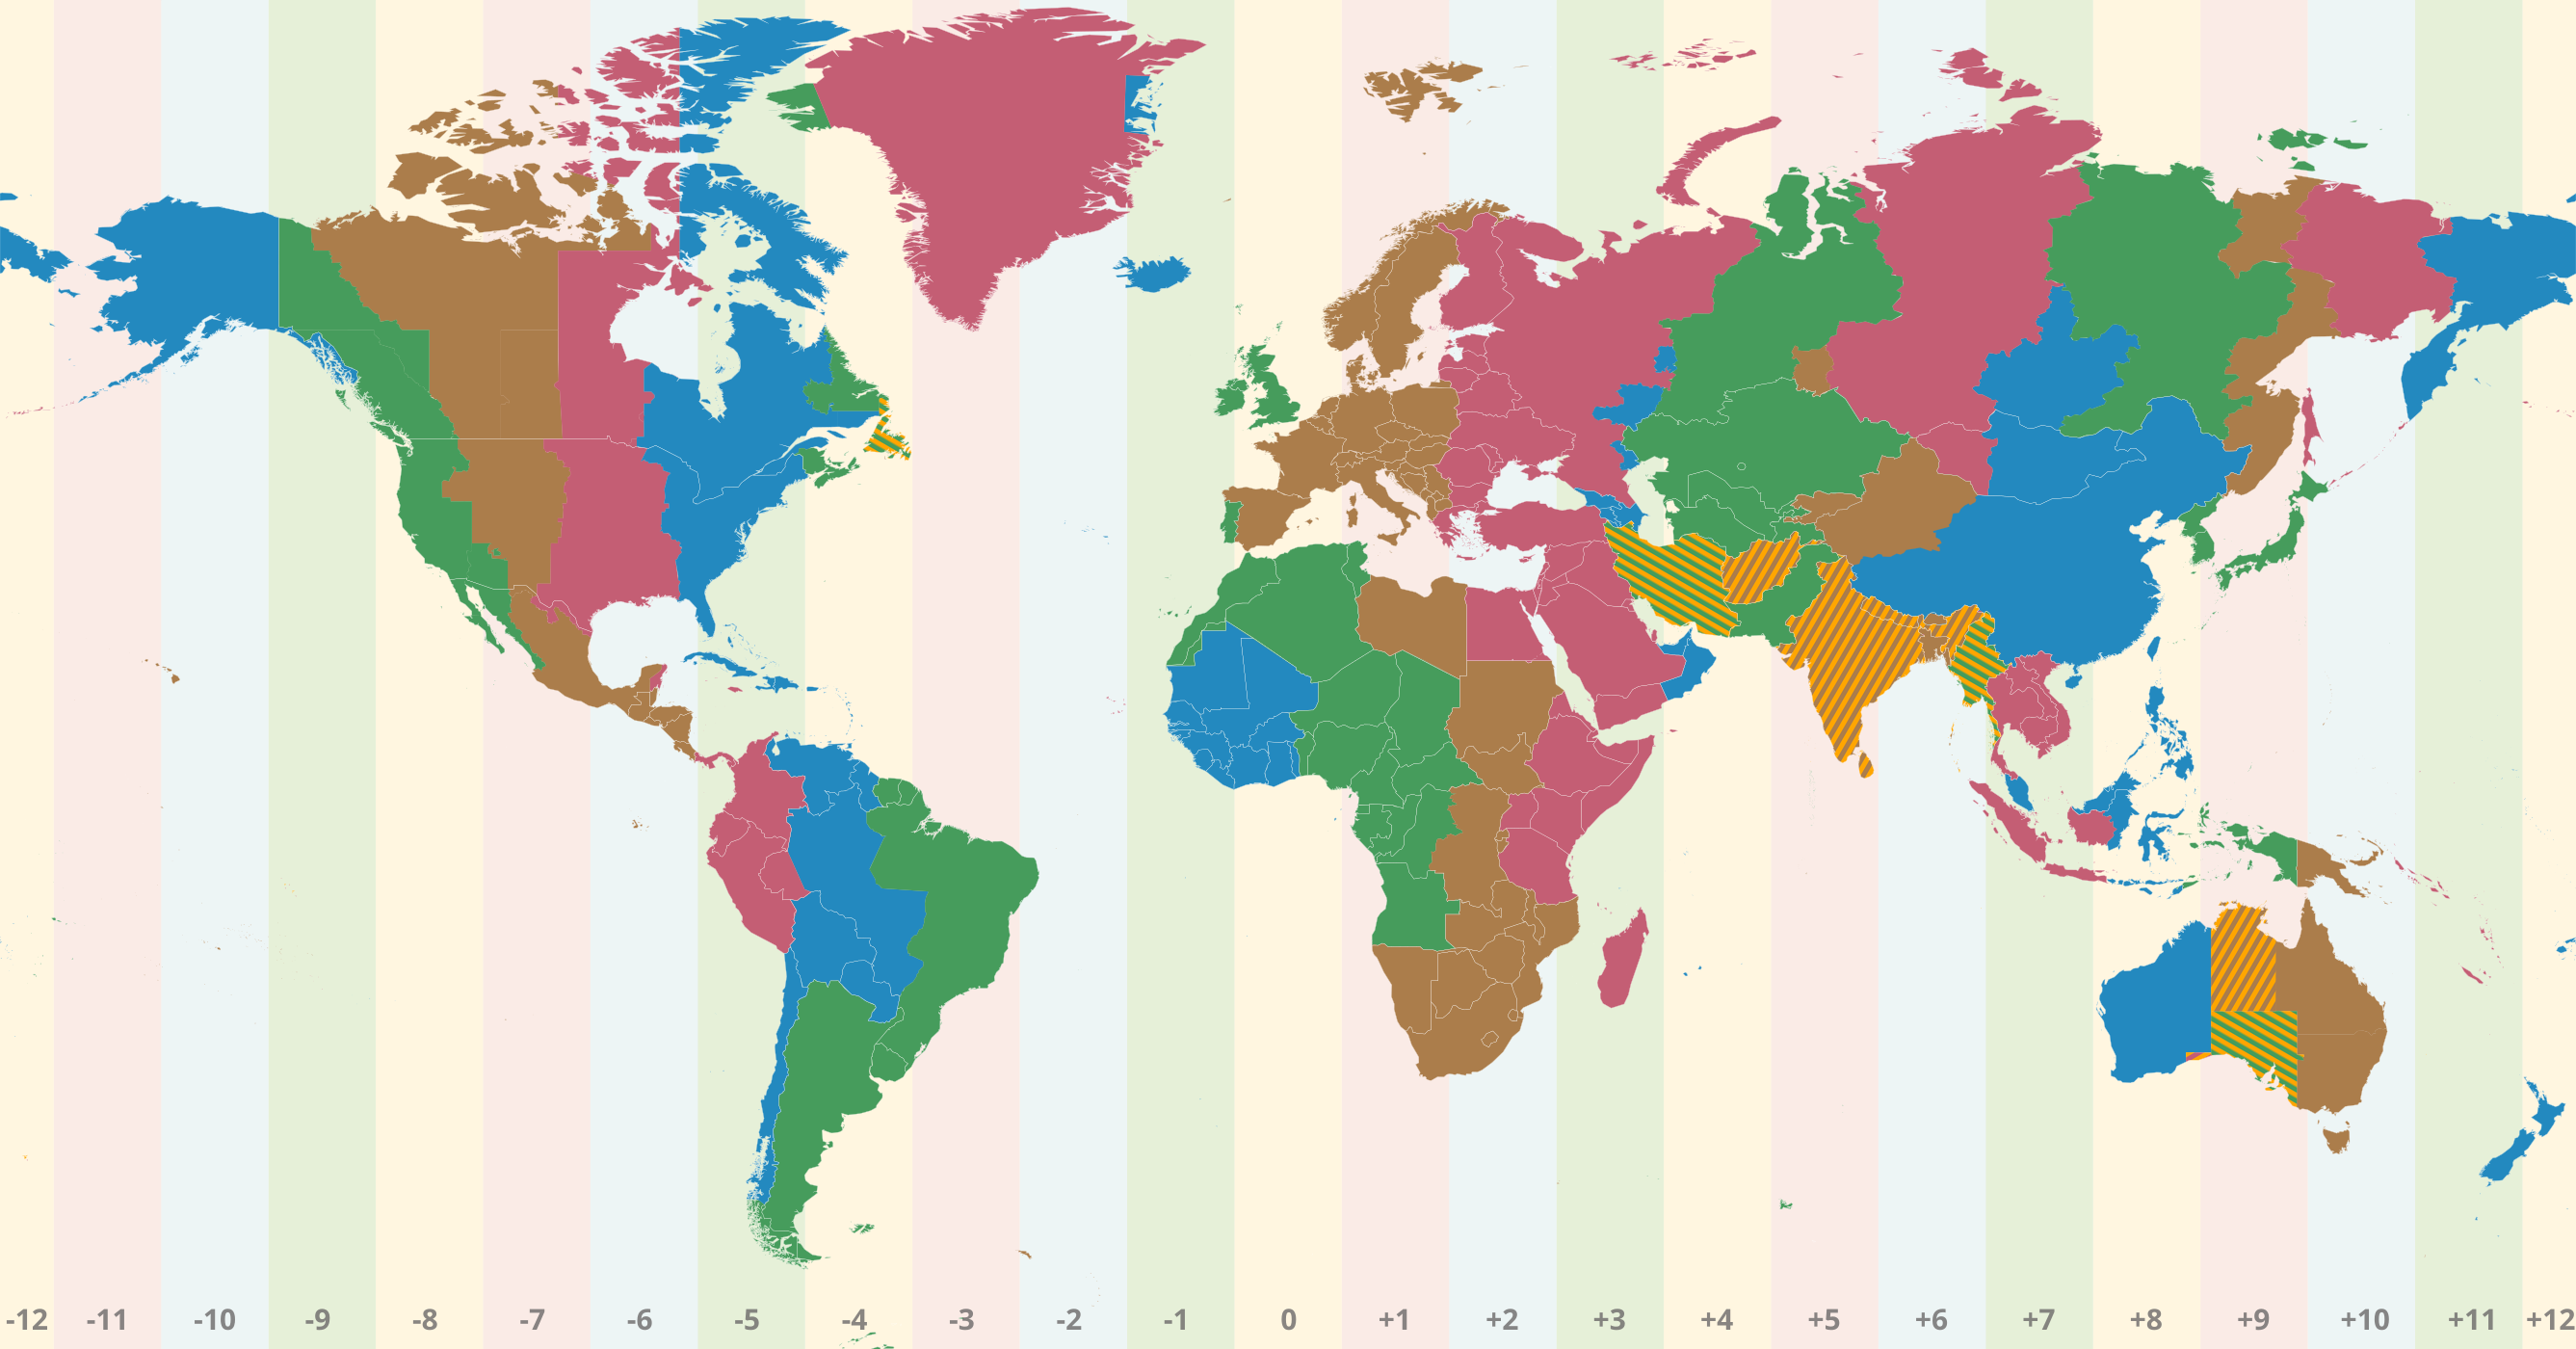 Mapa do mundo com o fuso horário UTC-6 em destaque